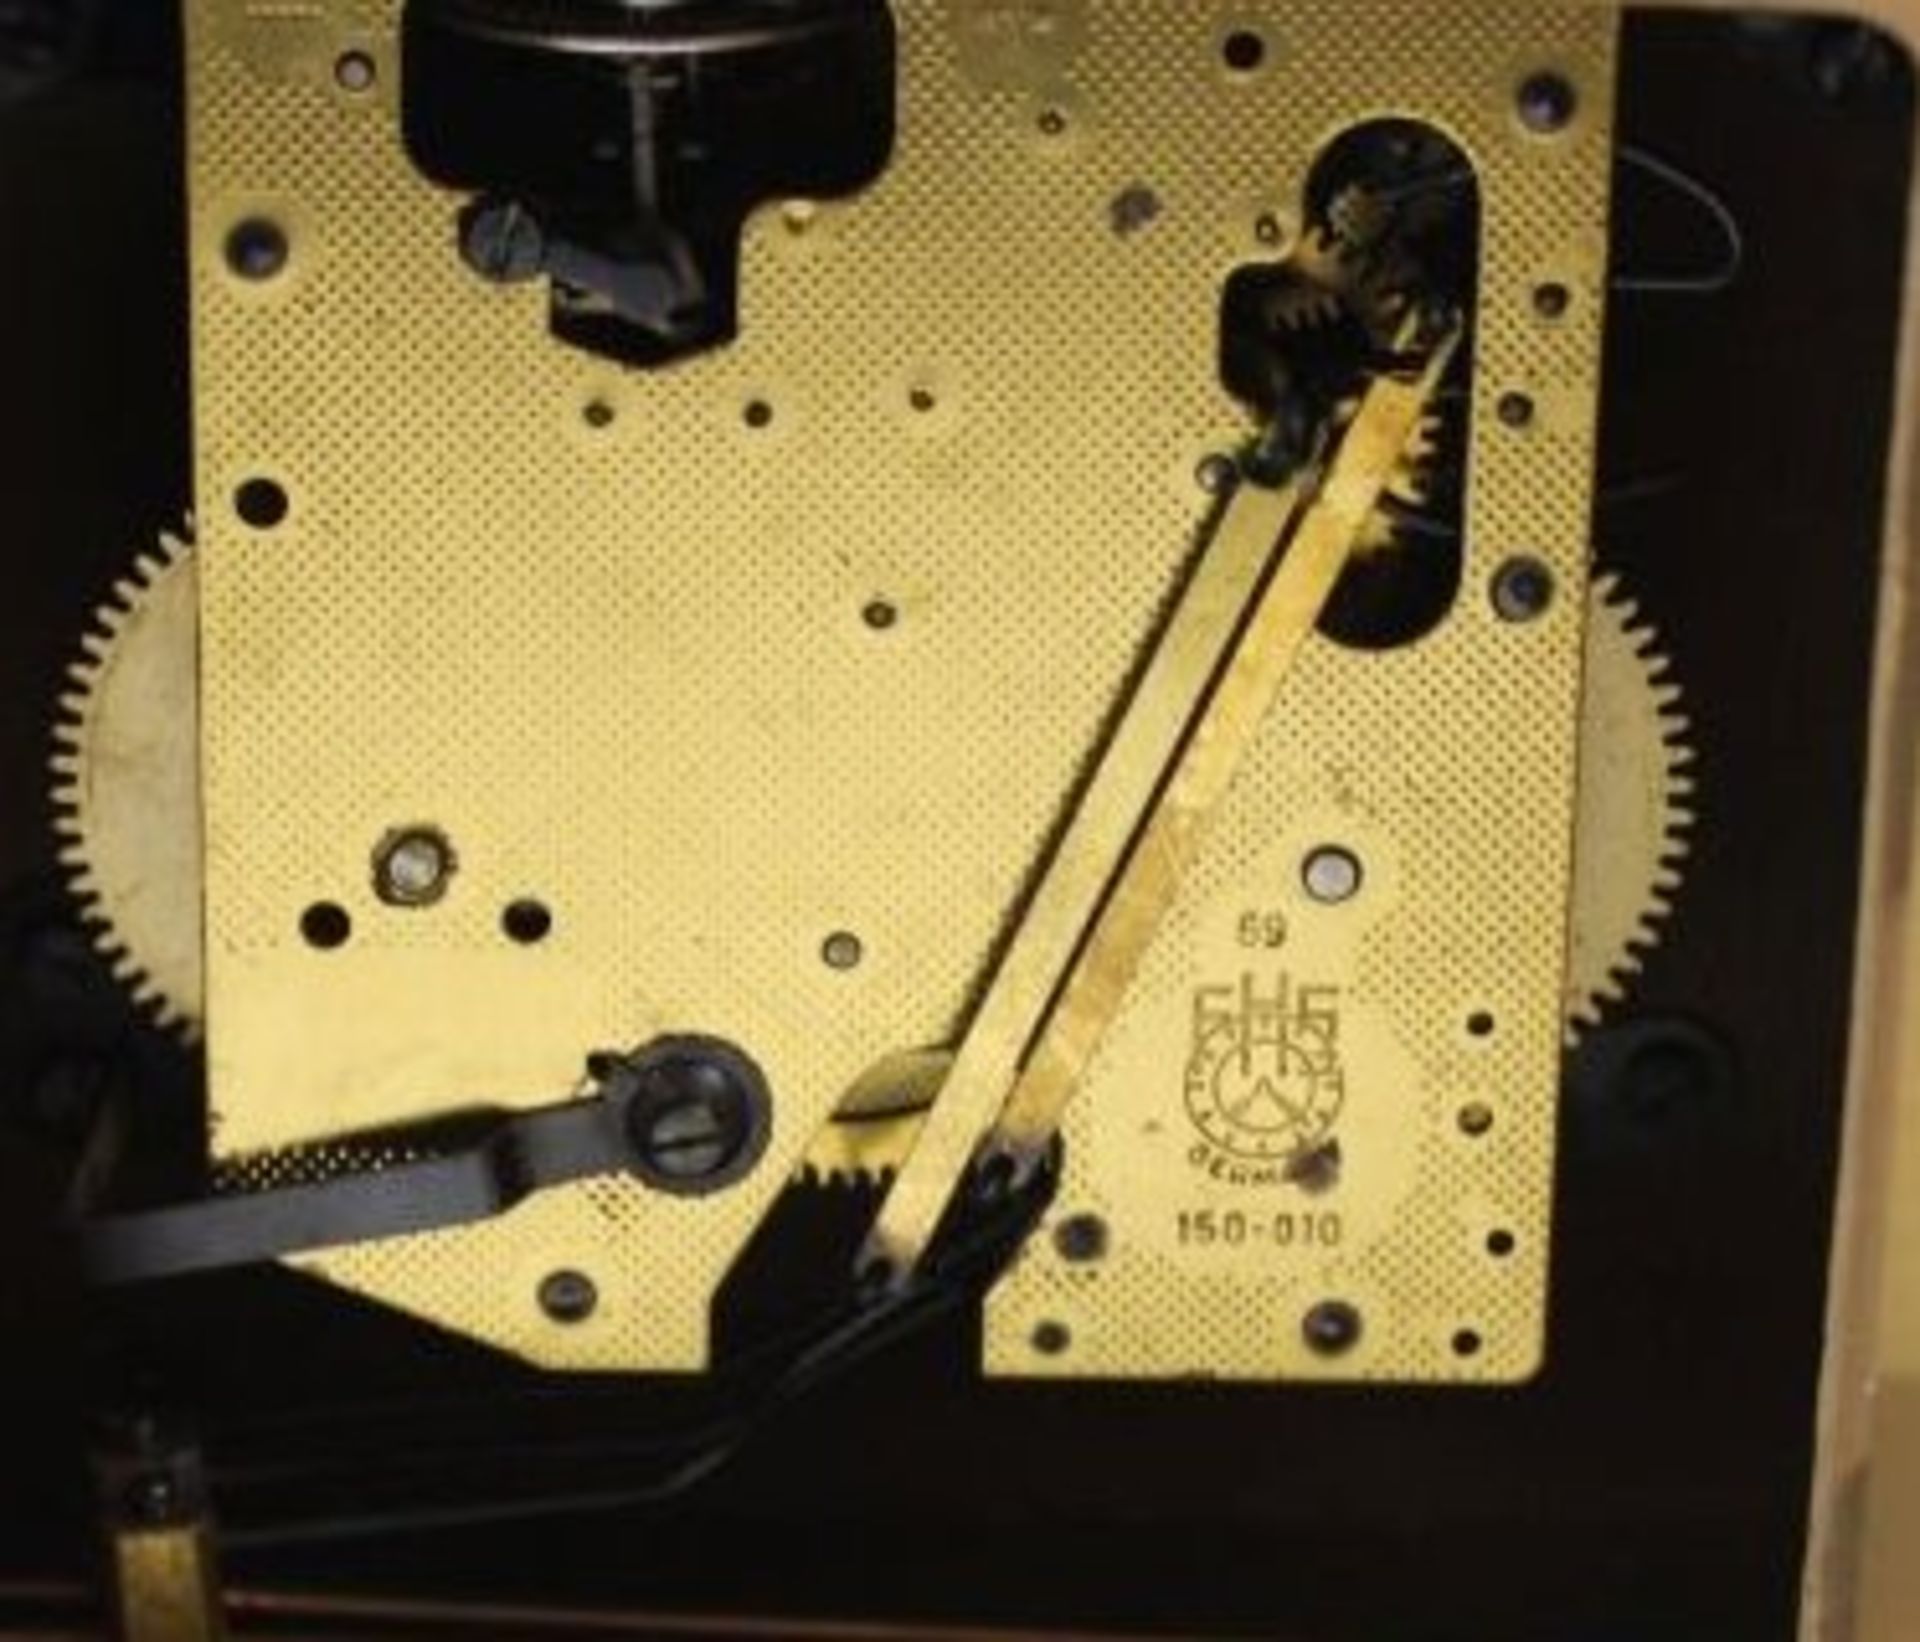 Buffet-Uhr, Dugena, 50/60er Jahre, Werk läuft, H-19,5cm B-50cm. - Bild 2 aus 2